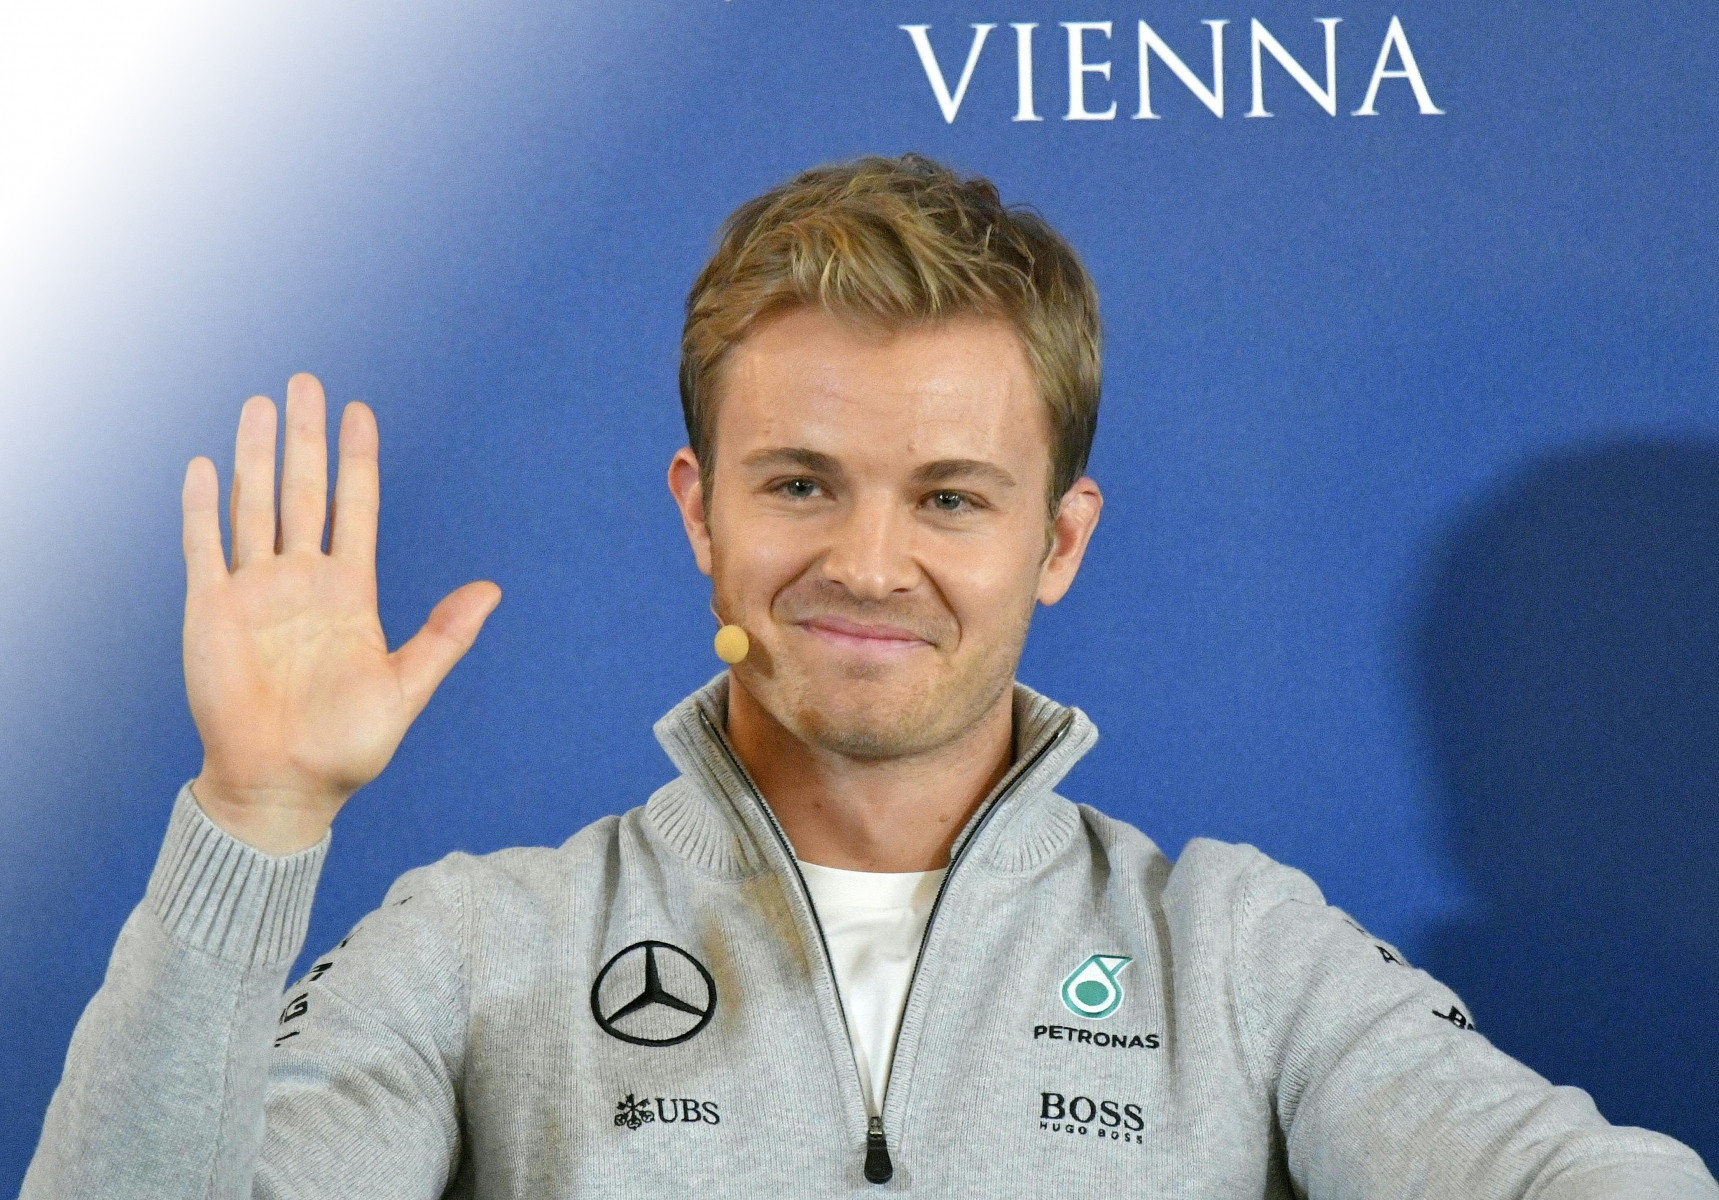 Formel 1-Weltmeister Nico Rosberg am Freitag, 2. Dezember 2016, anlaesslich der Veranstaltung "OEAMTC Welt des Motorsports" im Rahmen der FIA-Generalversammlung in Wien. (KEYSTONE/APA/Herbert Neubauer) MOTORSPORT ROSBERG